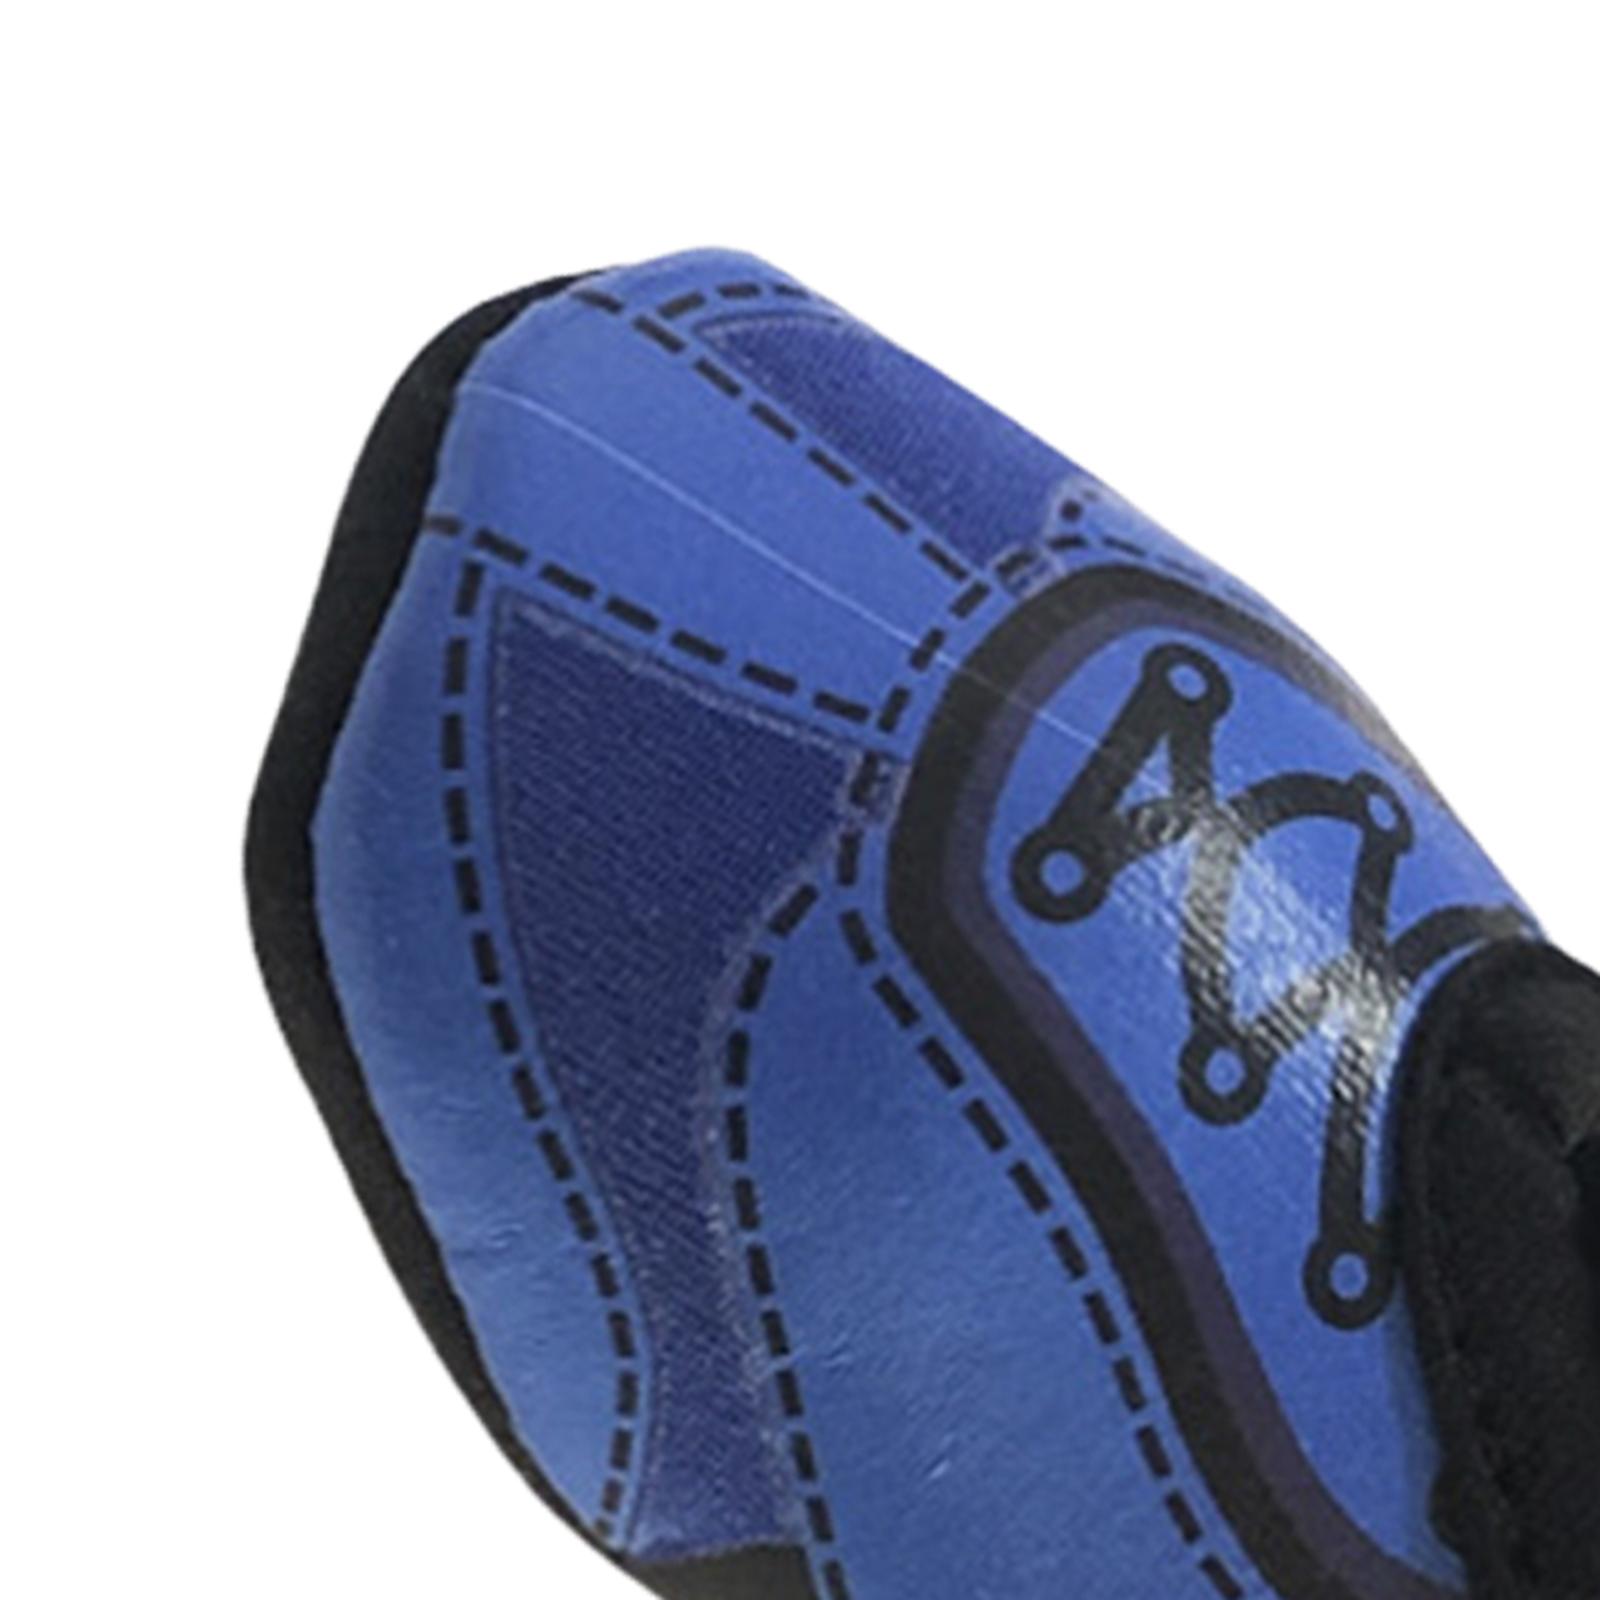 Neoprene Golf Ball Carry Bag Small Lightweight Golf Accessories Holder Blue